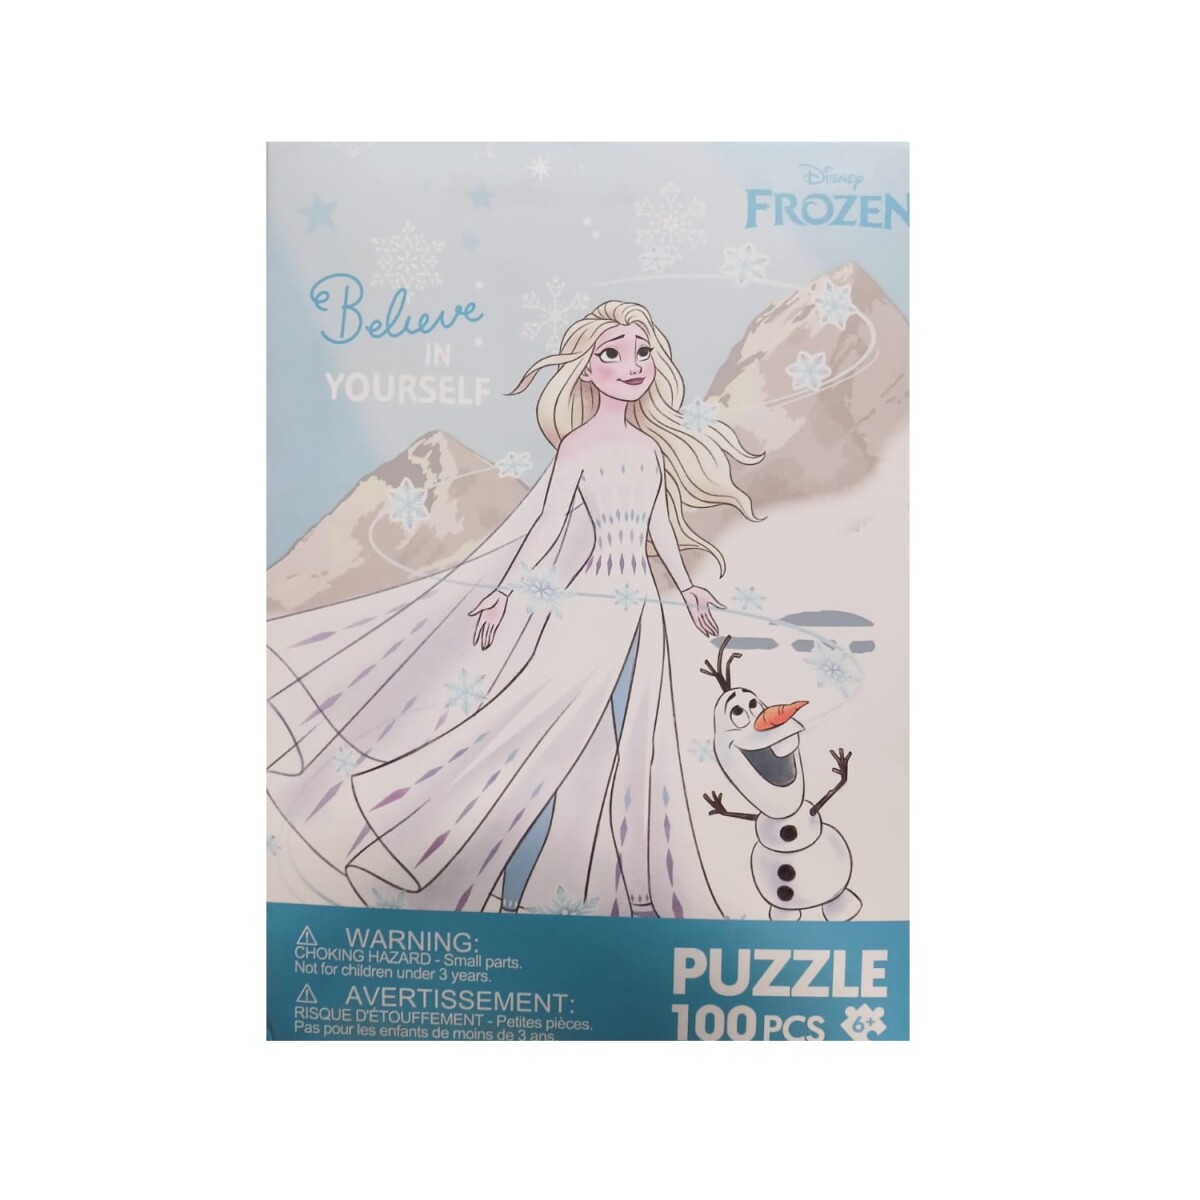 Puzzle Frozen 100pcs - celeste 